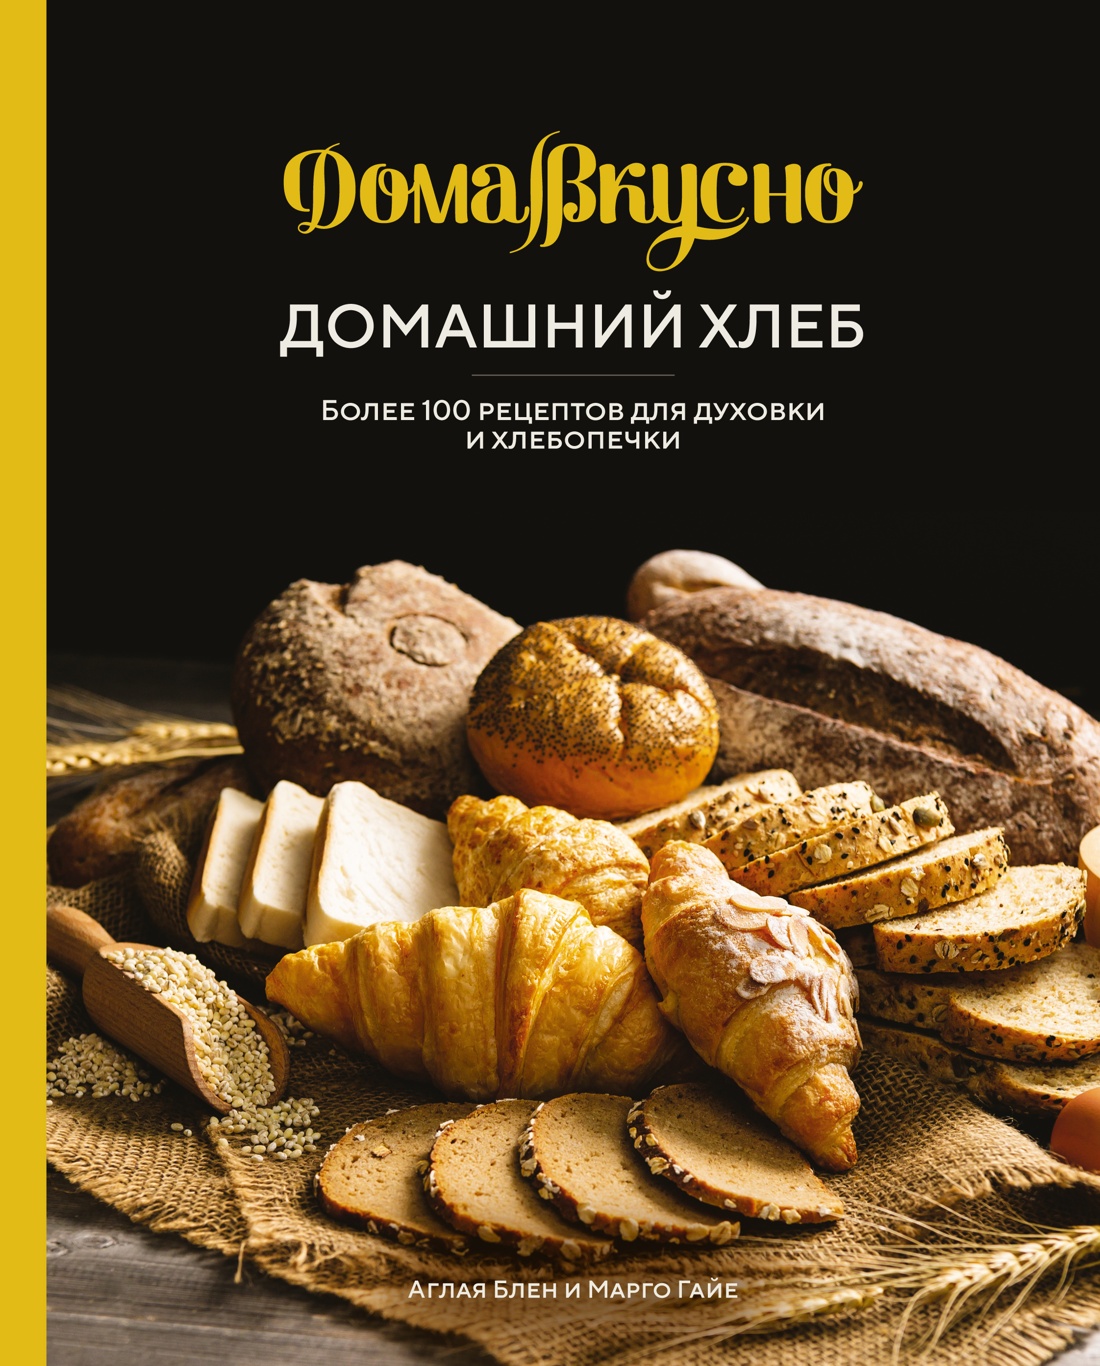 Домашний хлеб. Более 100 рецептов для духовки и хлебопечки